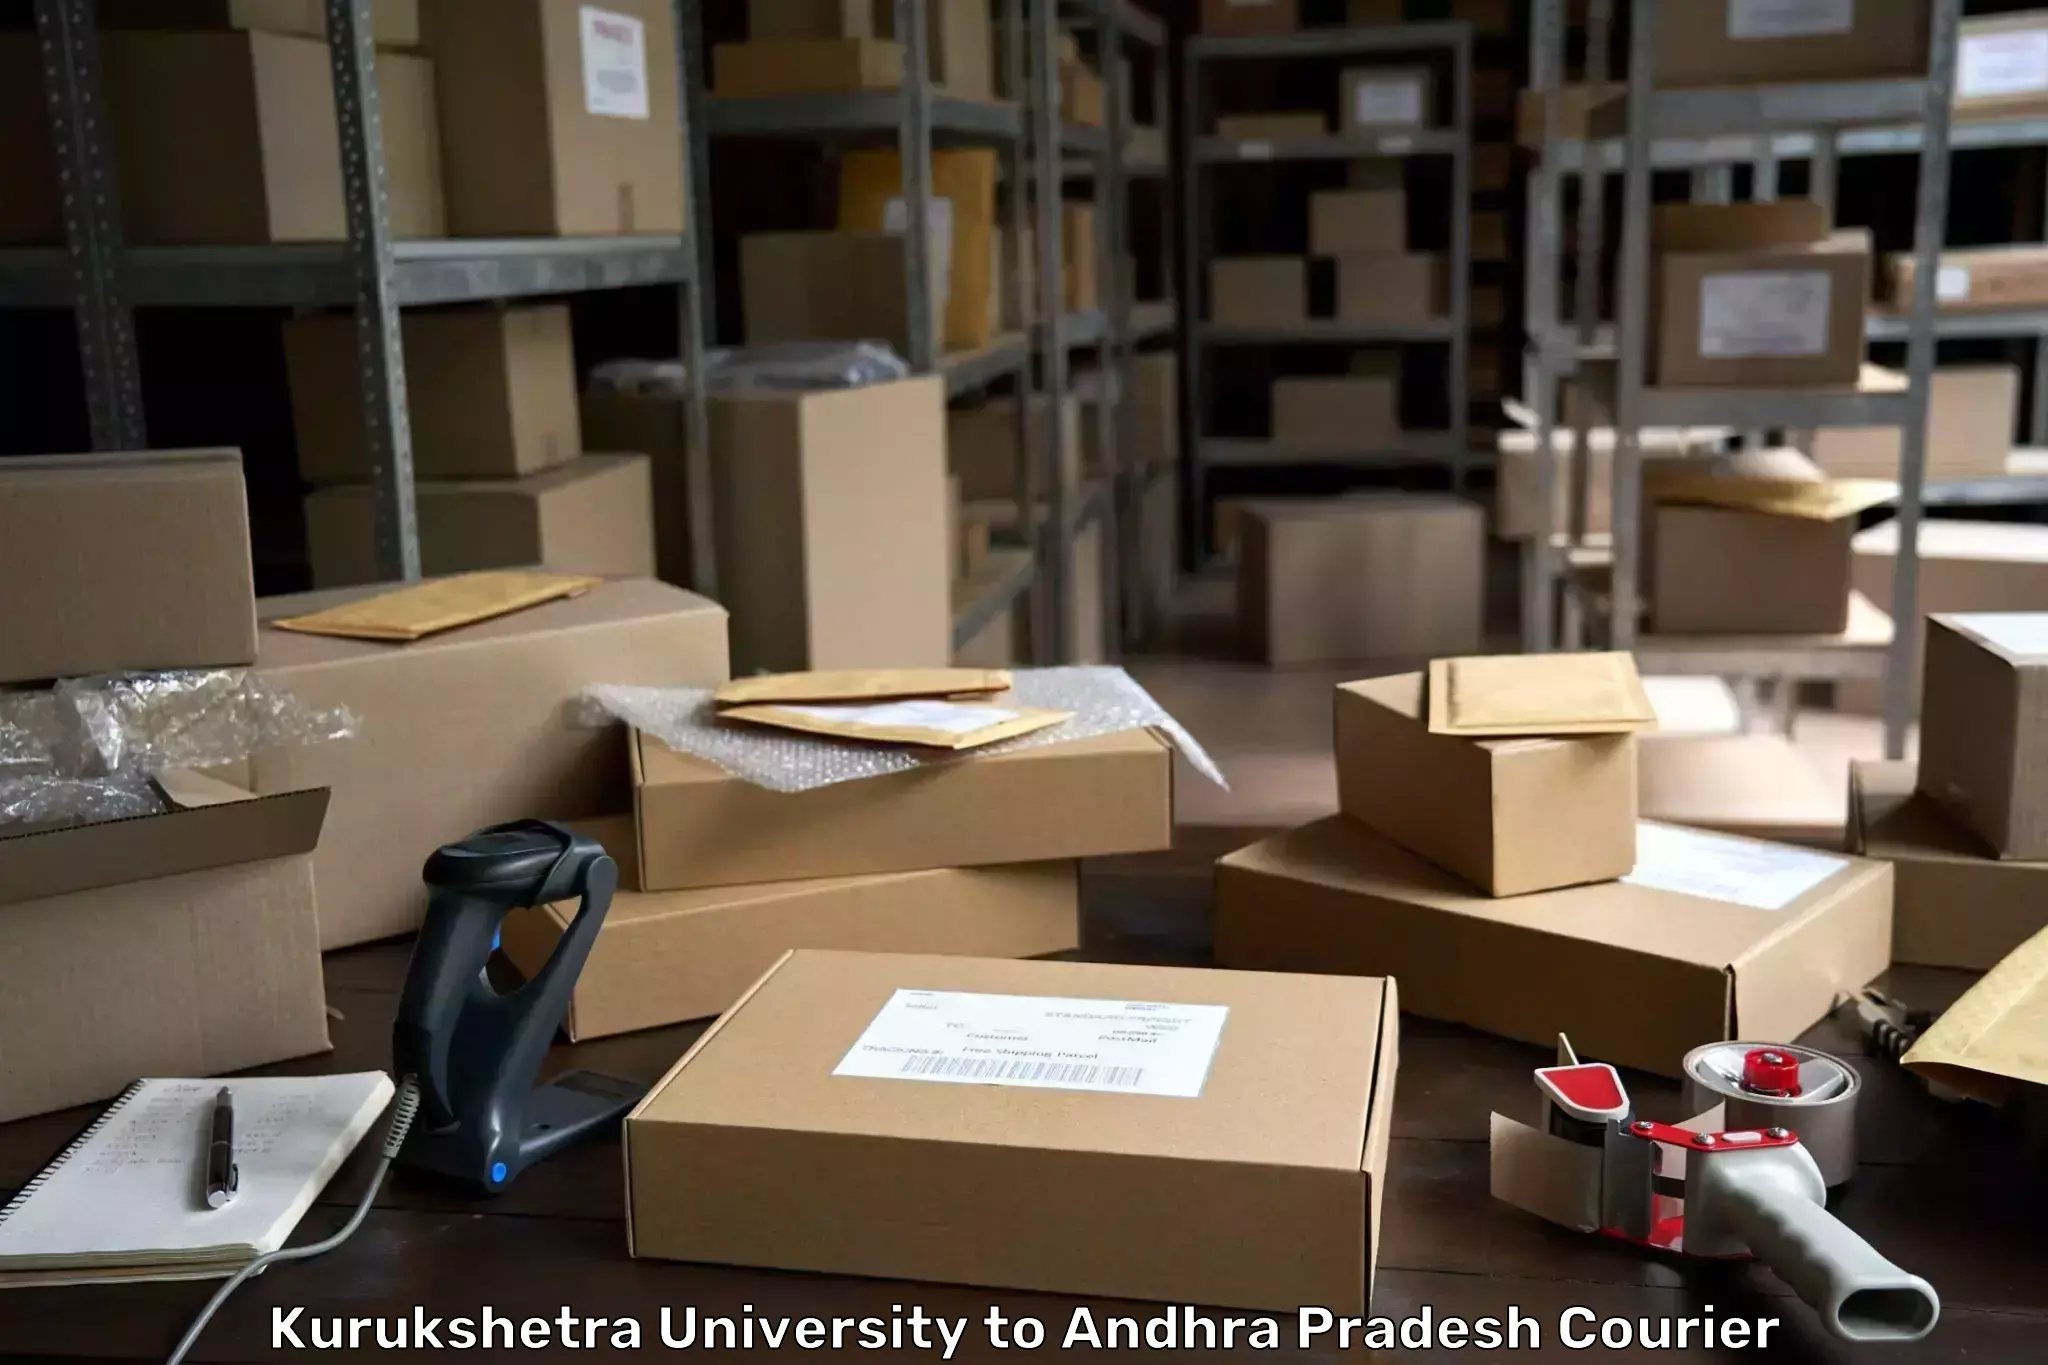 Multi-national courier services Kurukshetra University to Tripuranthakam